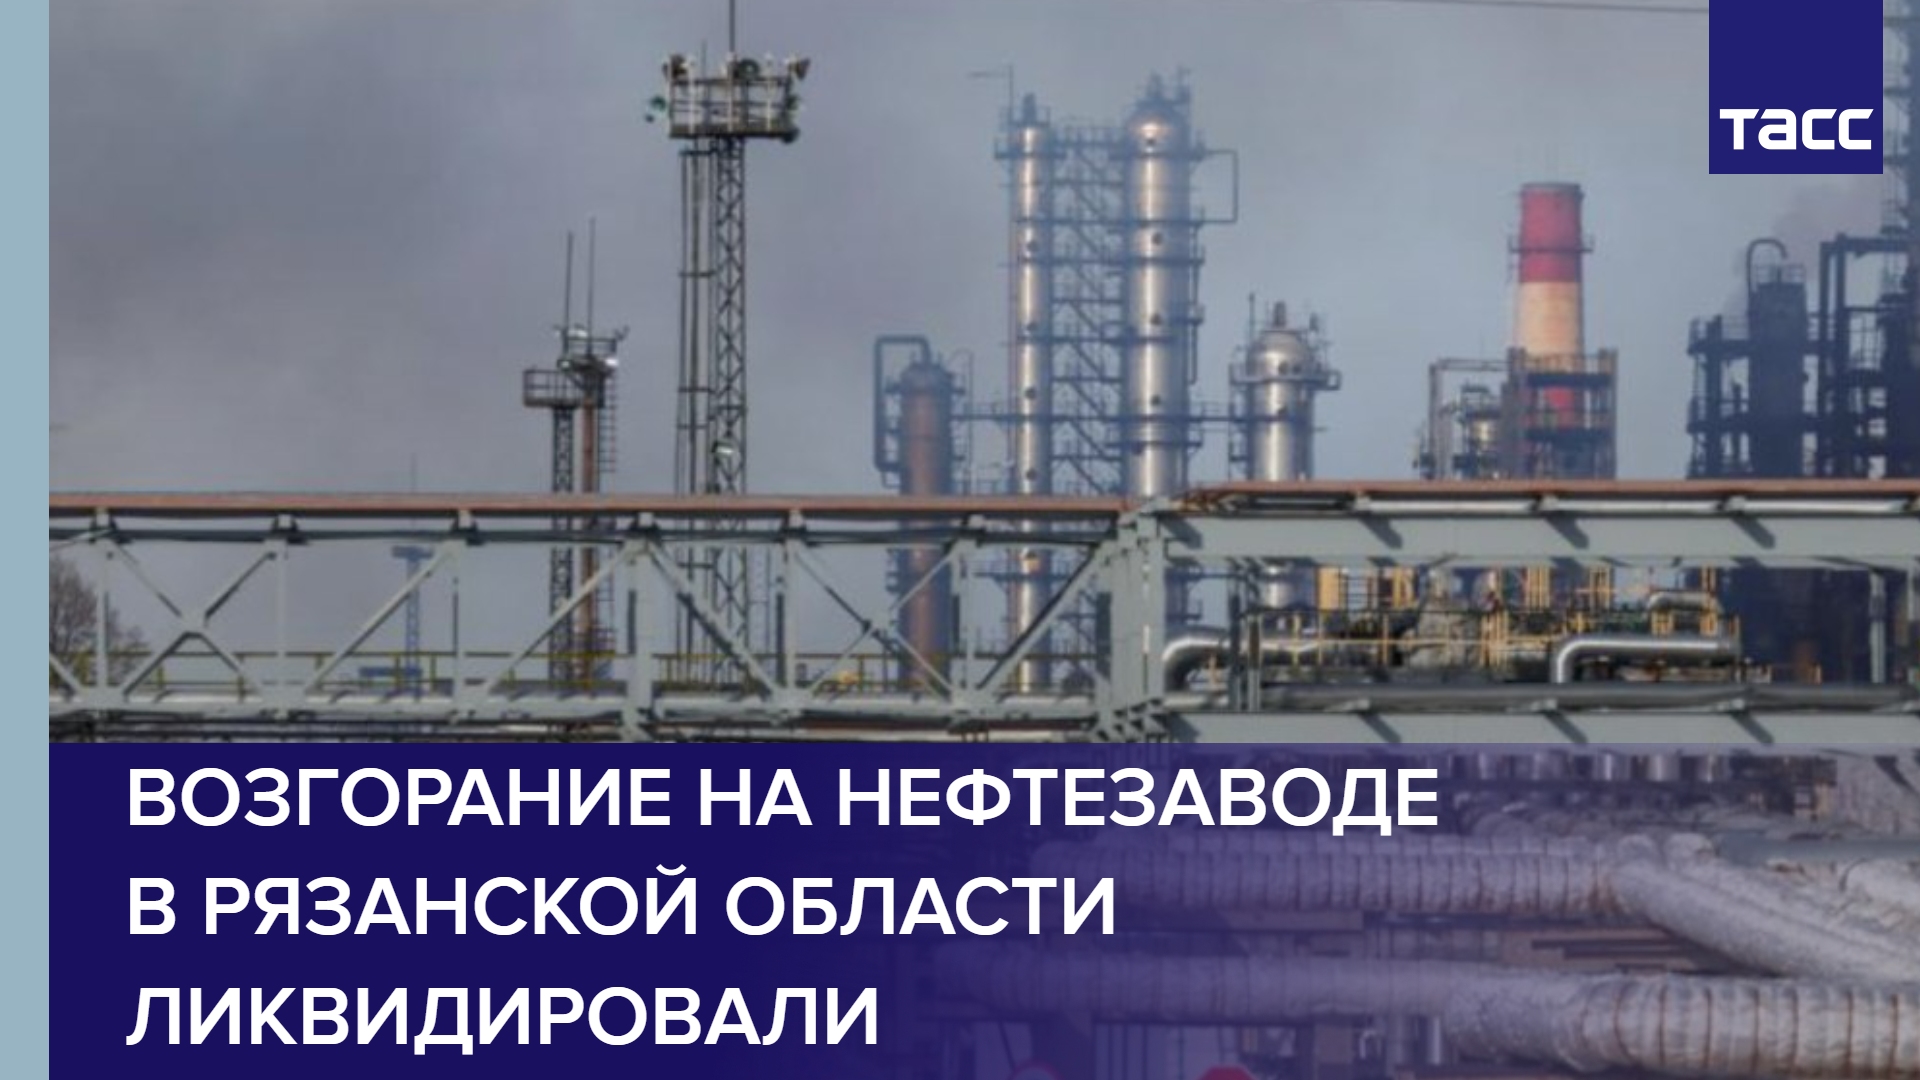 Возгорание на нефтезаводе в Рязанской области ликвидировали #shorts